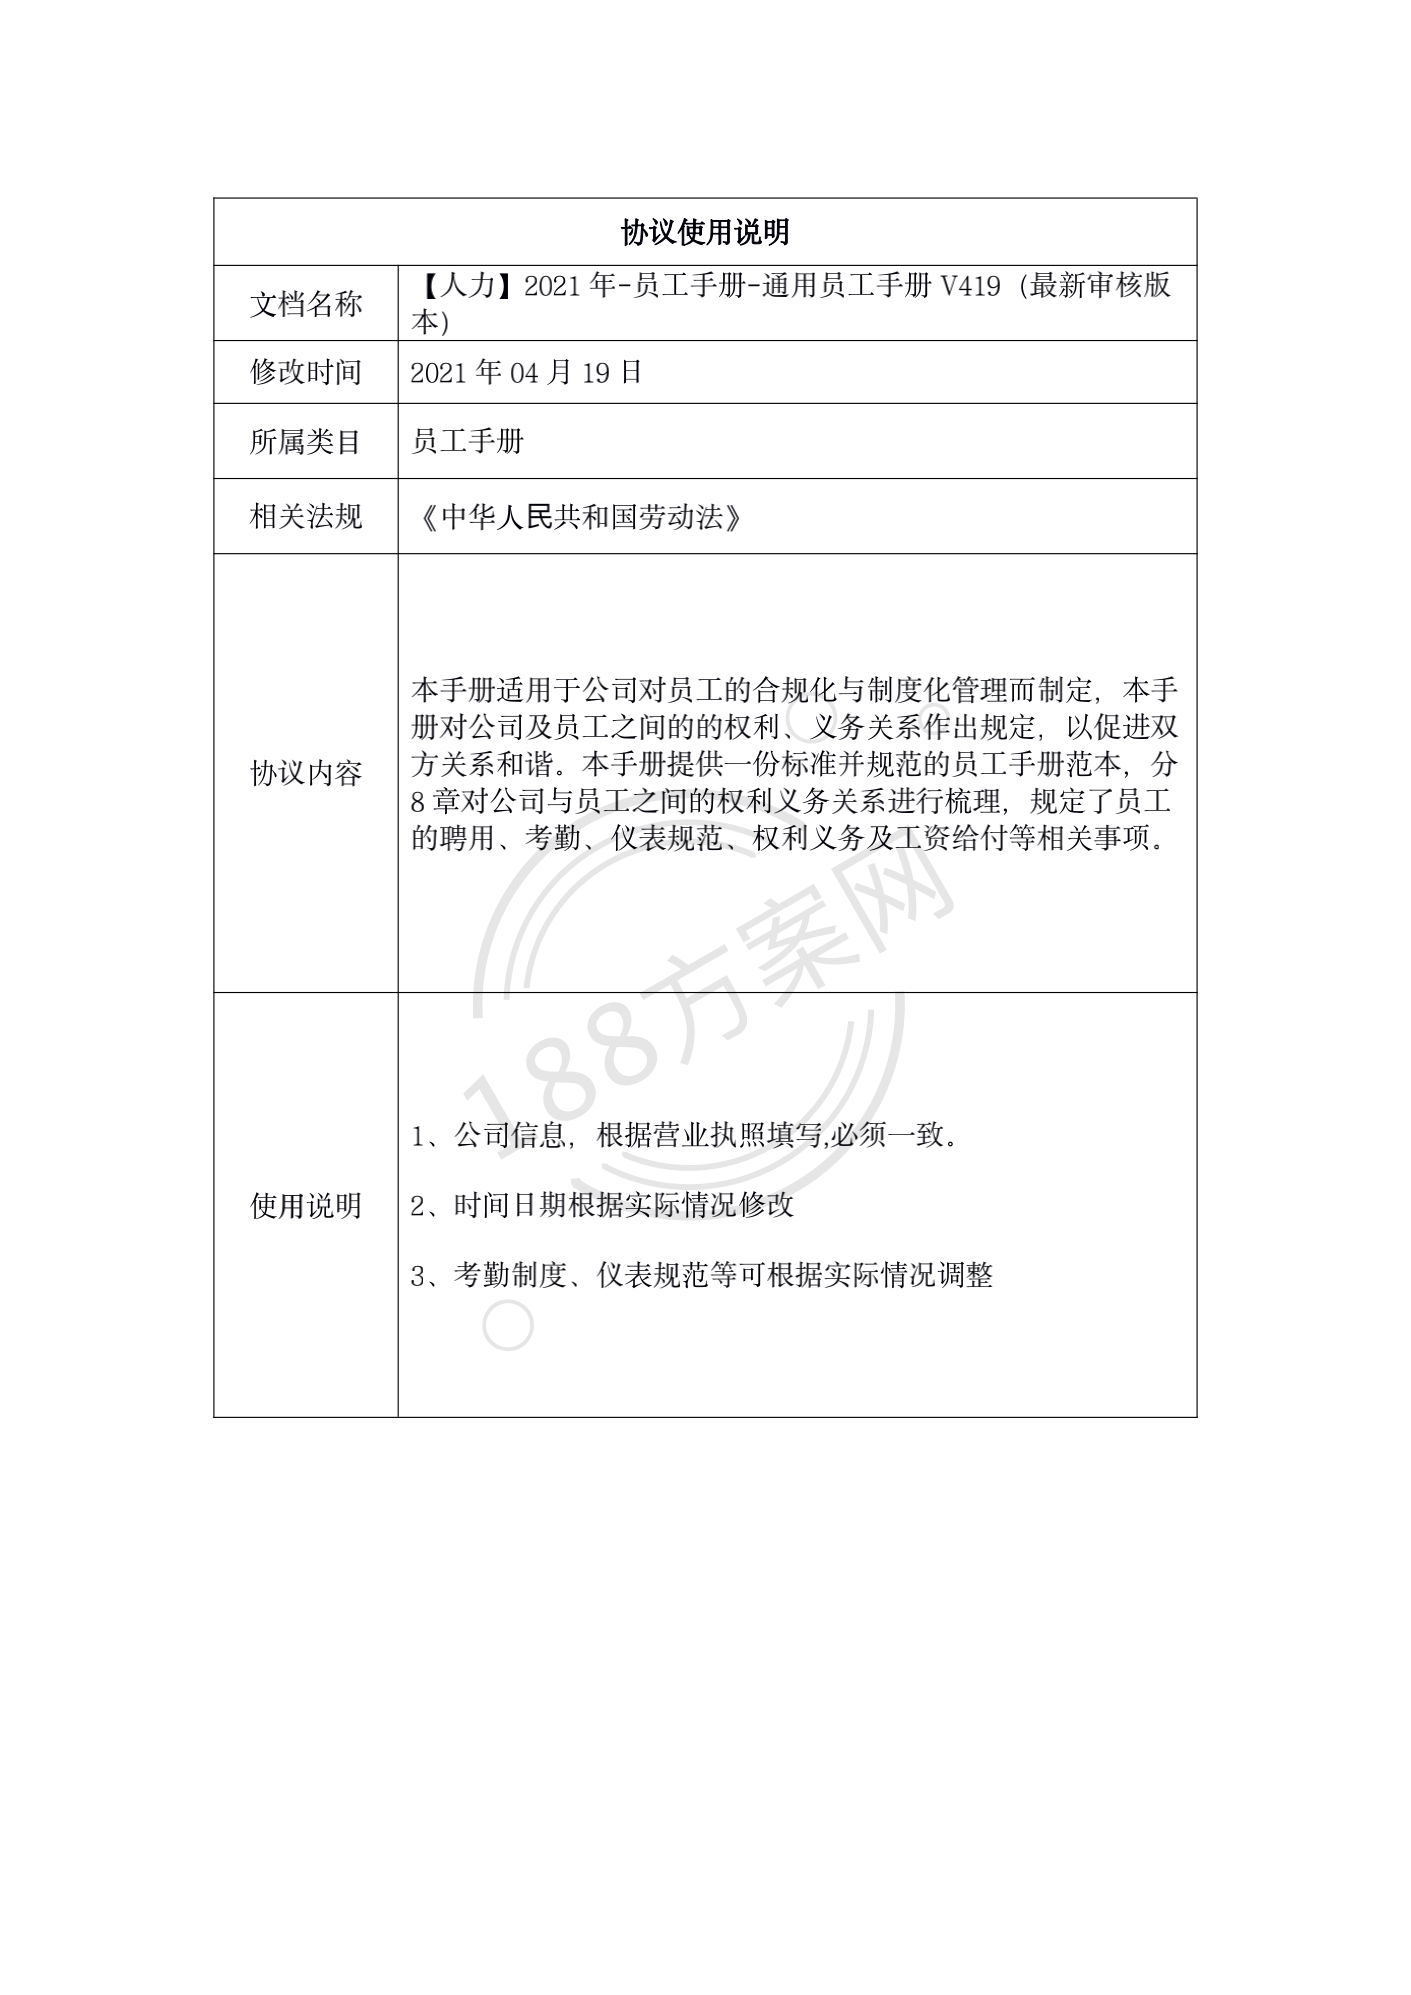 【人力】2021年-员工手册-通用员工手册V419（最新审核版本）